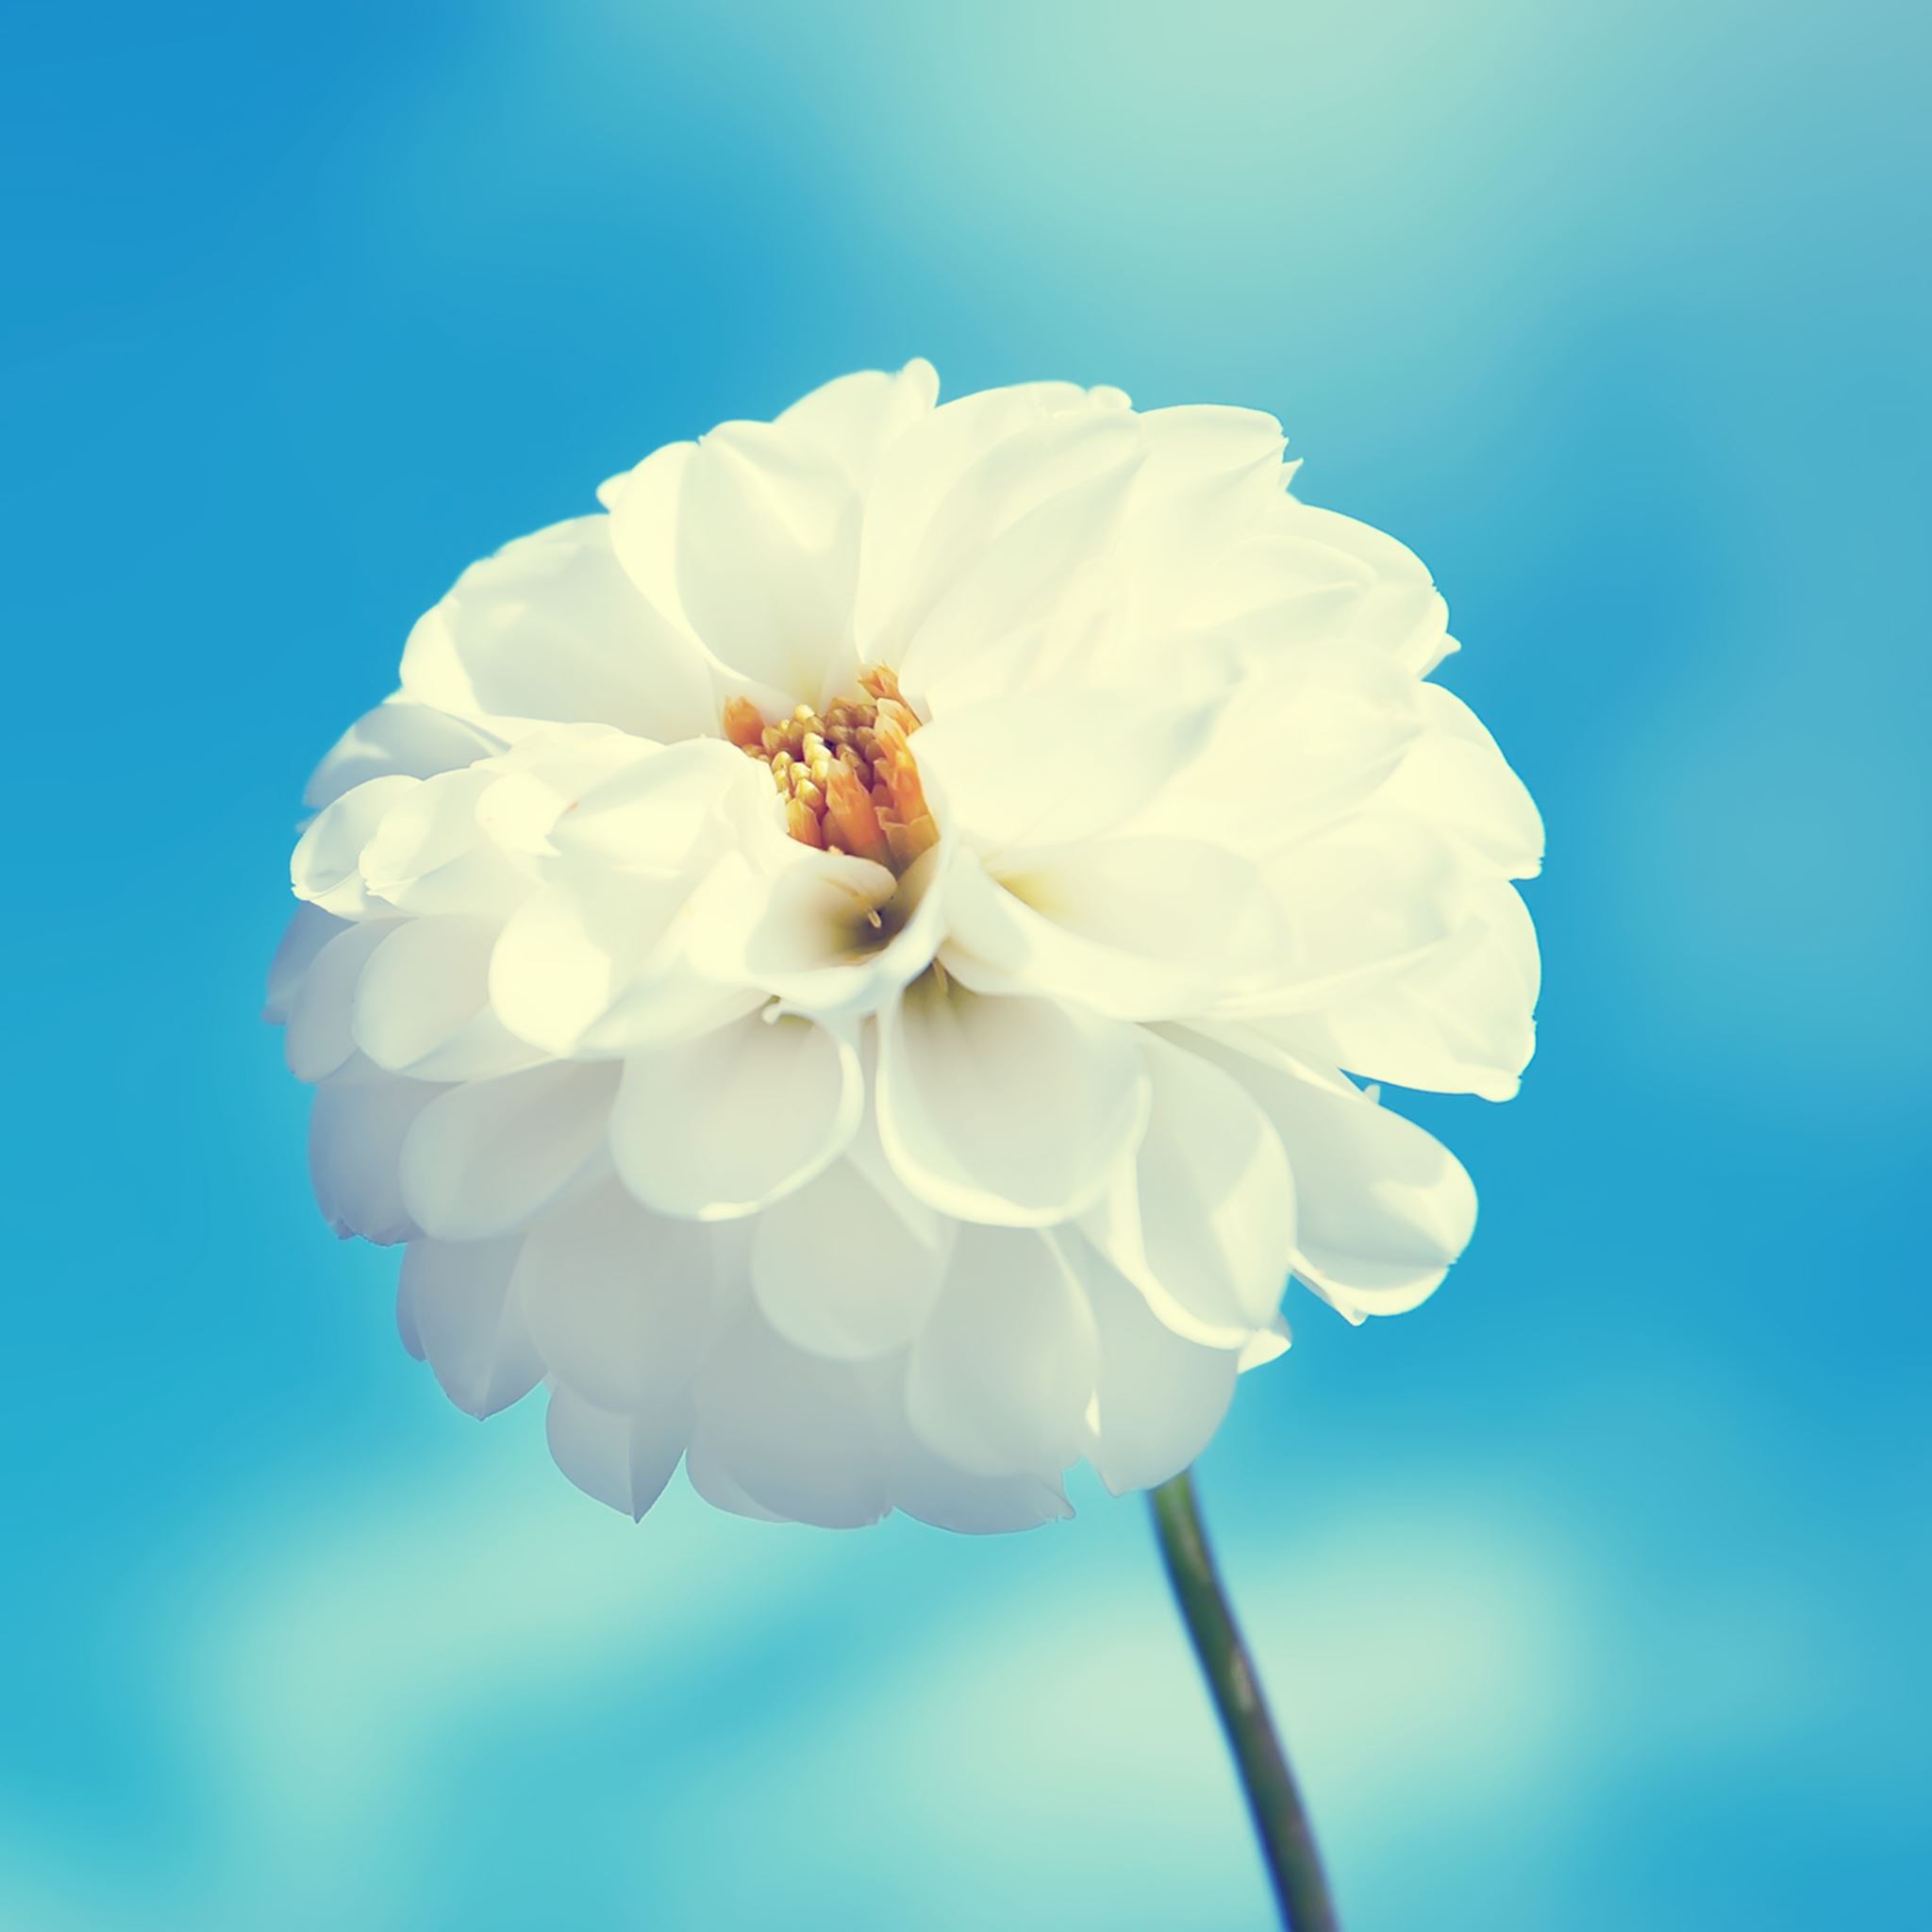 White Flower iPad Air wallpaper 